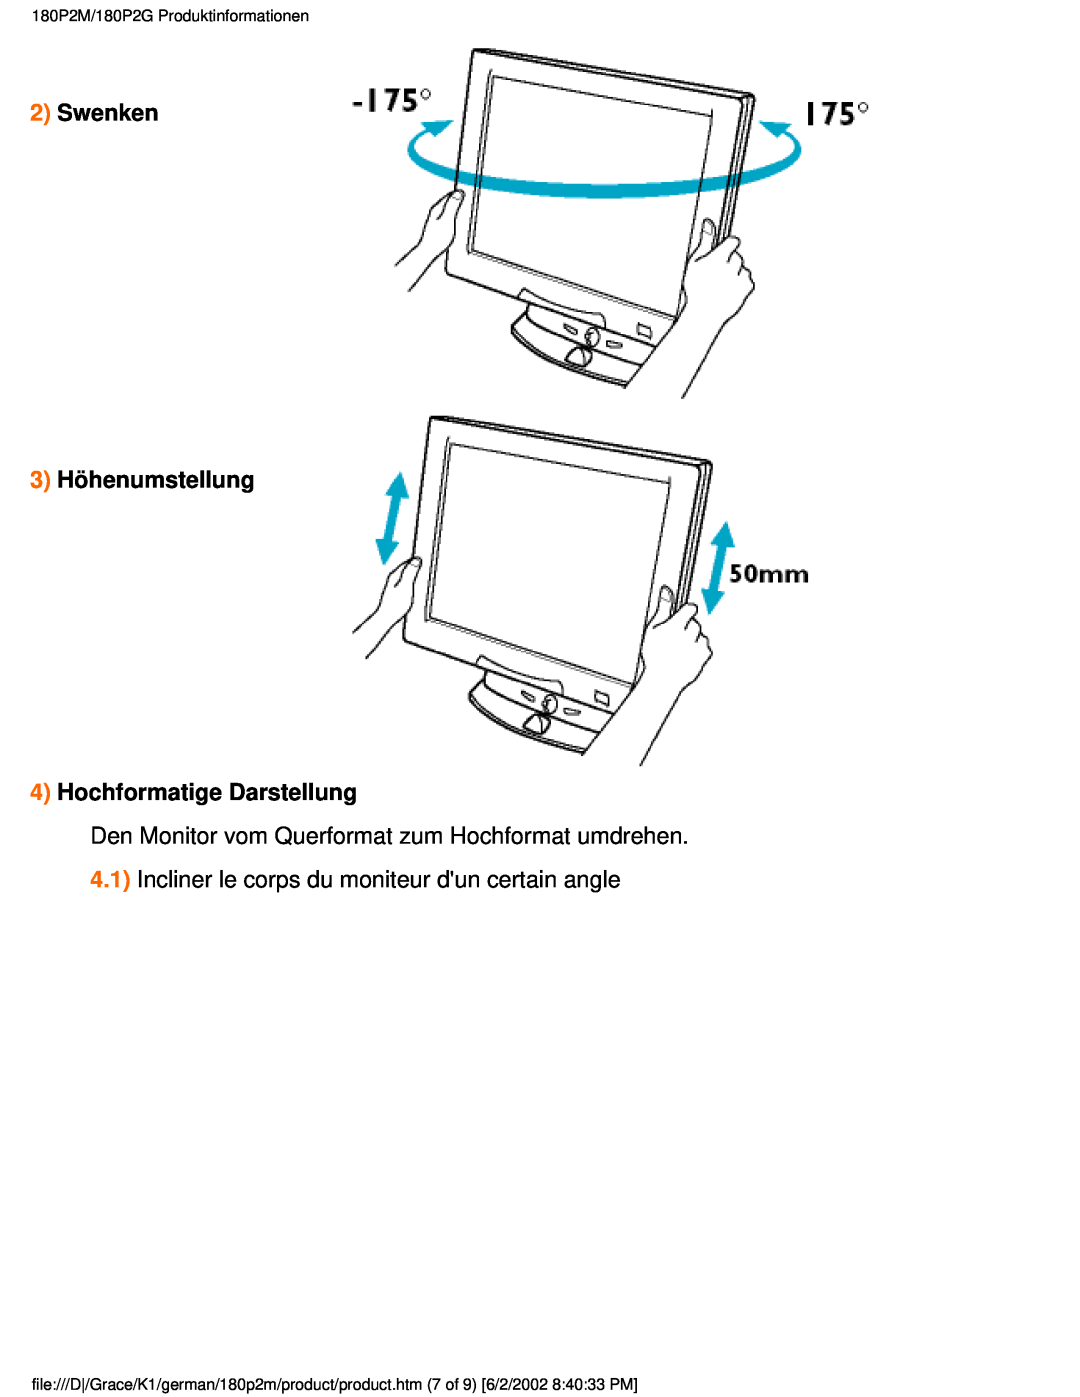 Philips user manual Swenken 3 Höhenumstellung 4 Hochformatige Darstellung, 180P2M/180P2G Produktinformationen 